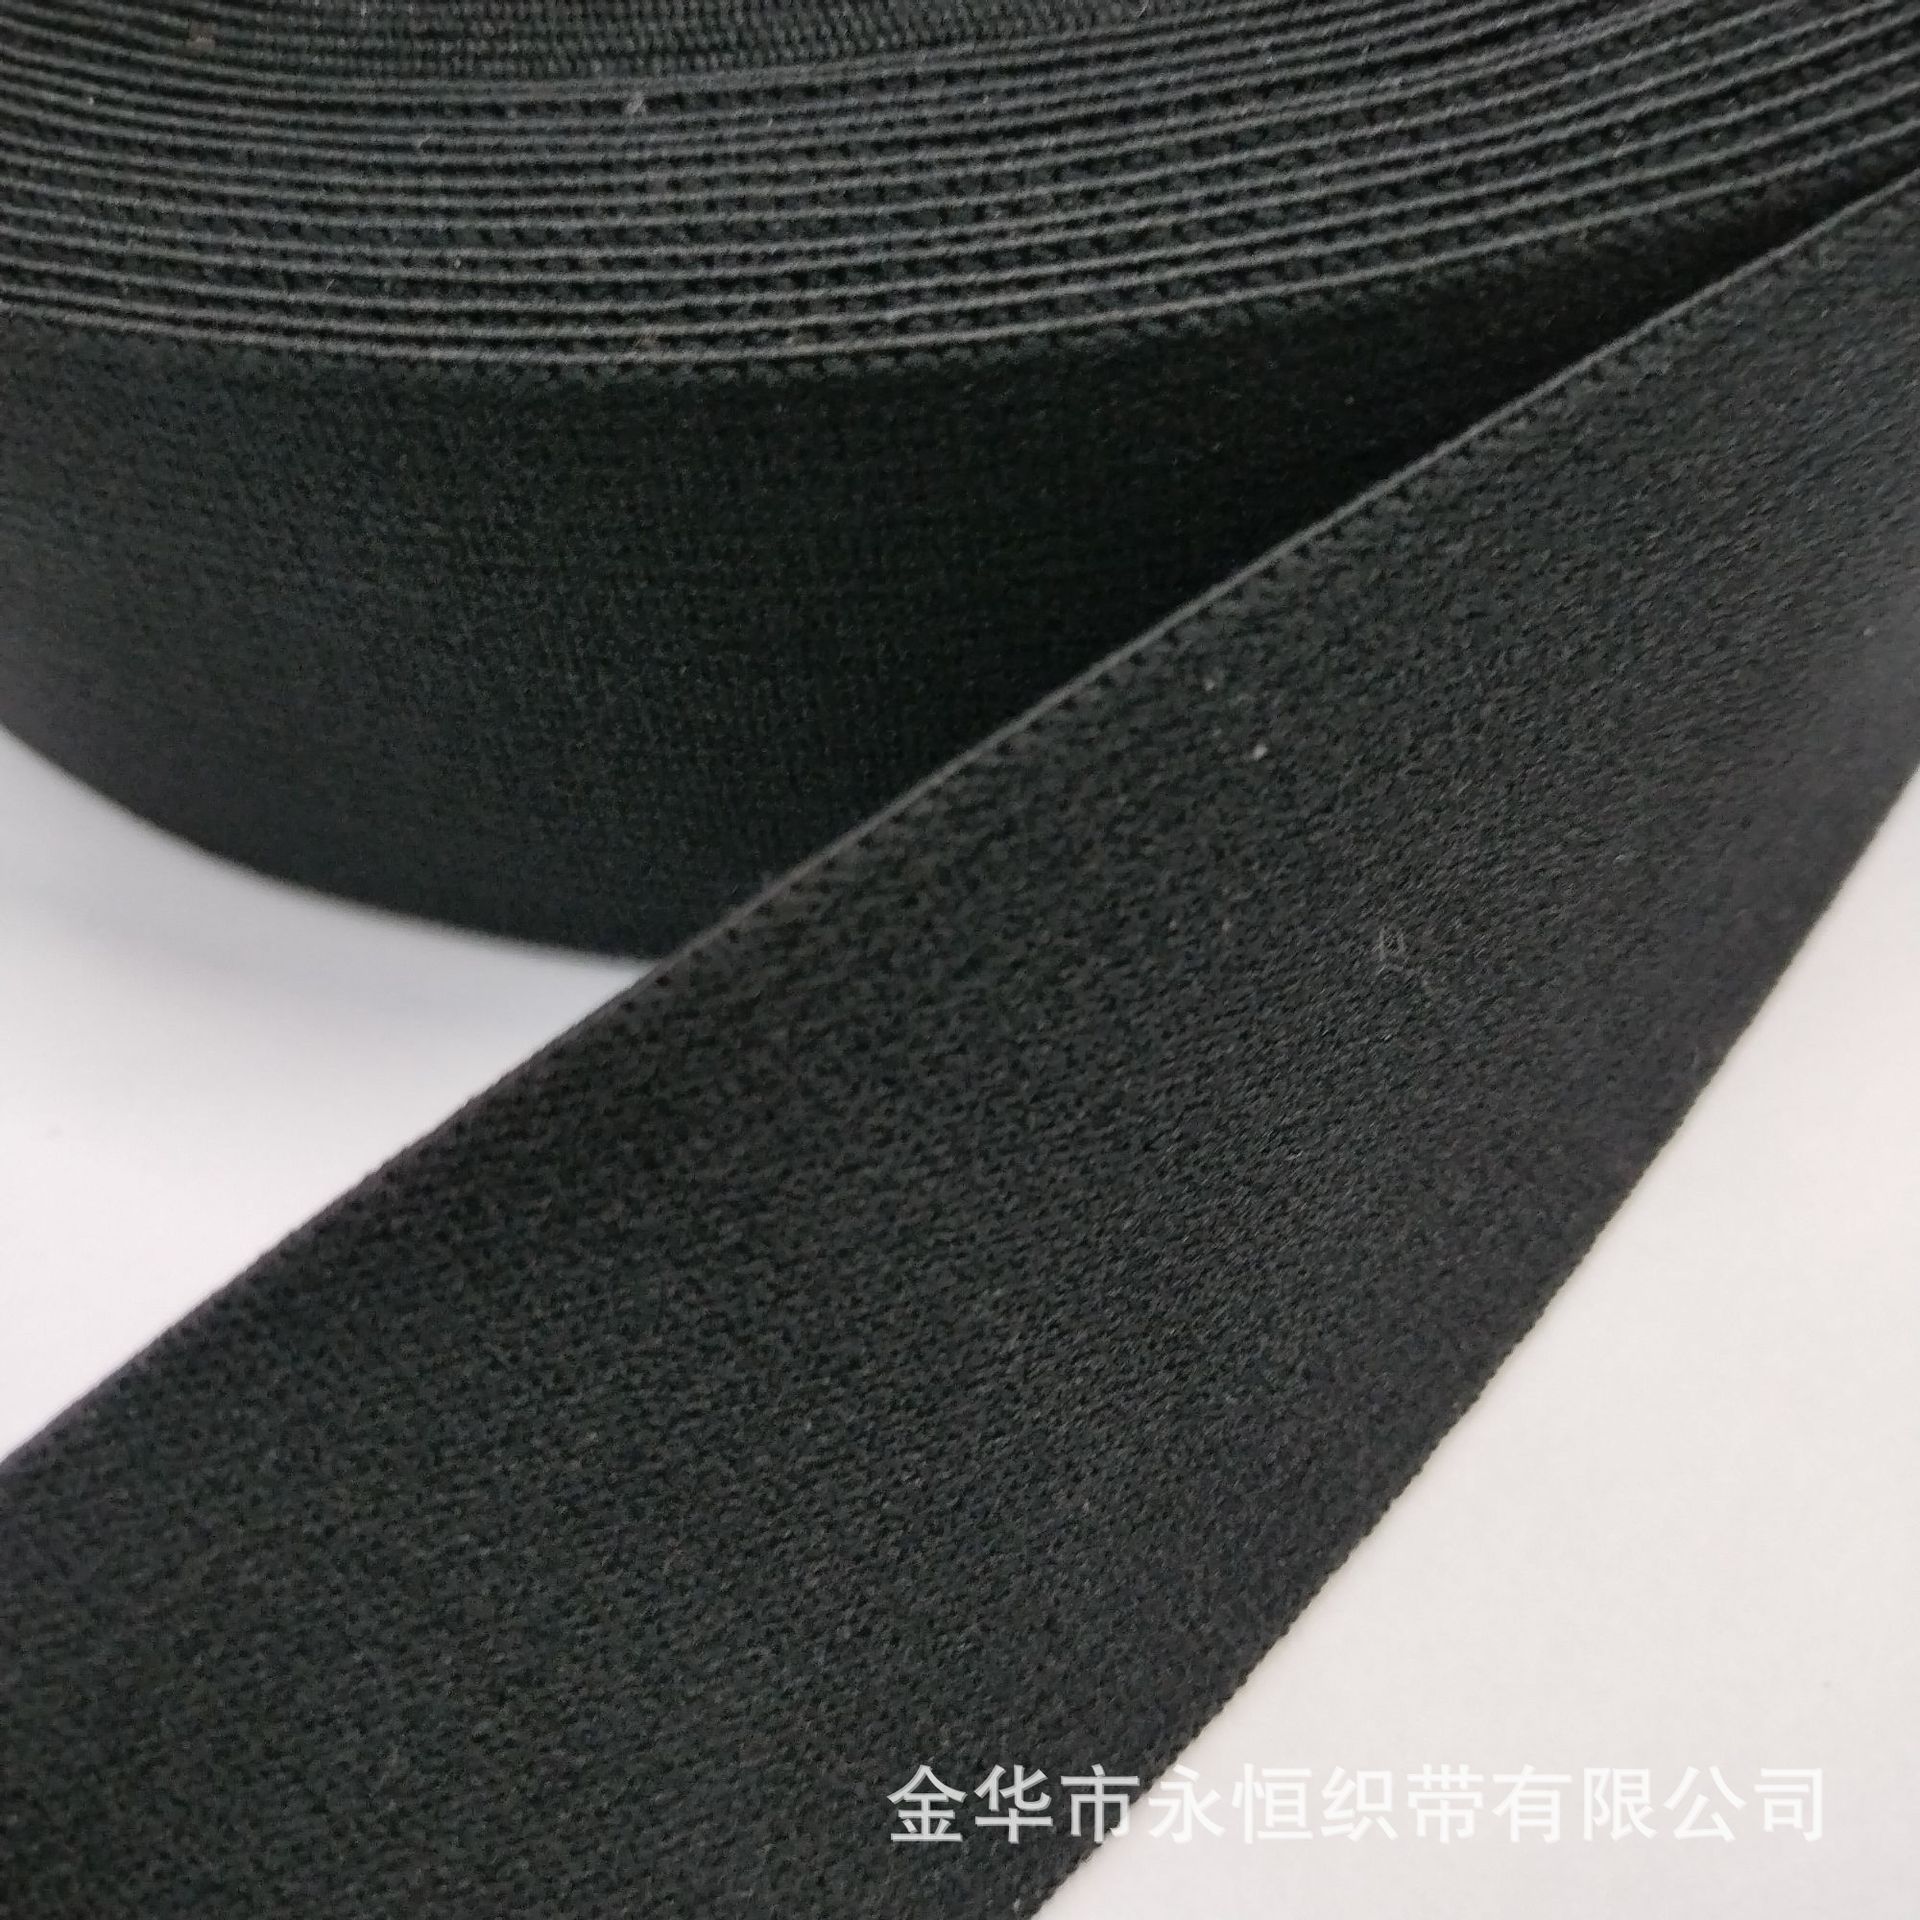 Factory in Stock 4. 0cm5.0cm Nylon Black Double-Sided Velvet Elastic Band Brushed Leggings Waist of Trousers Belt